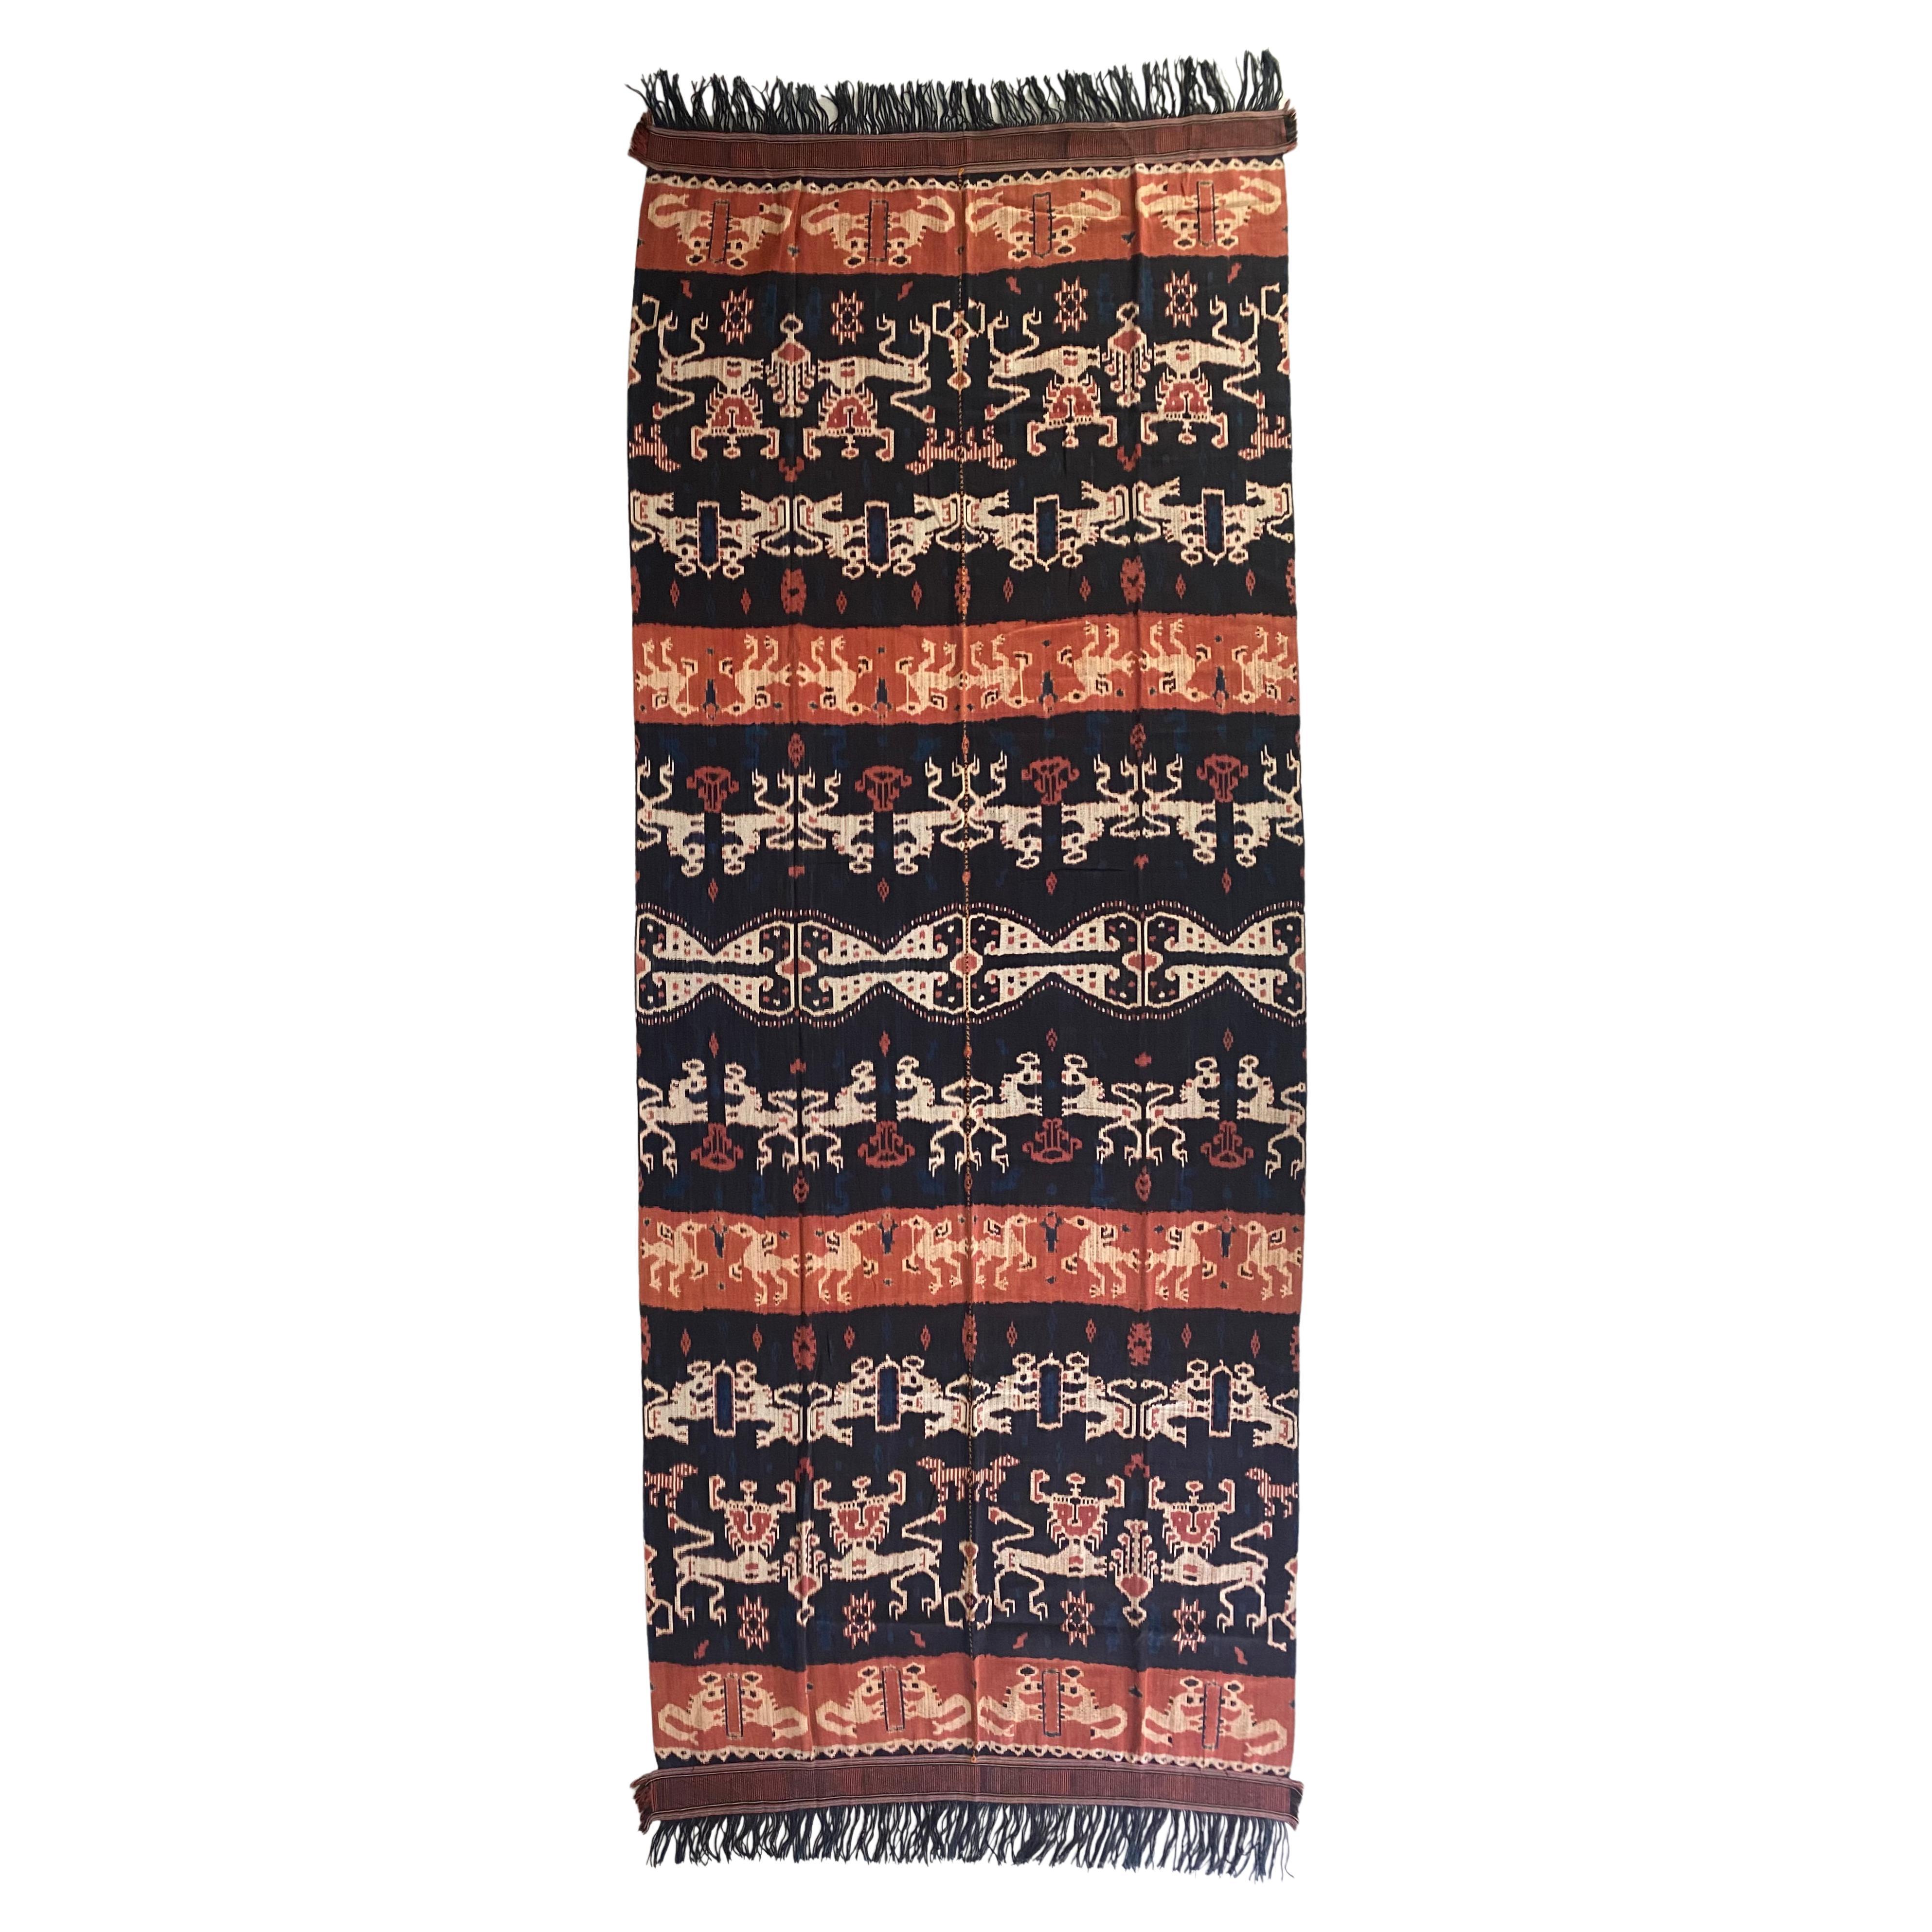 Ikat-Textil von der Sumba-Insel, Indonesien